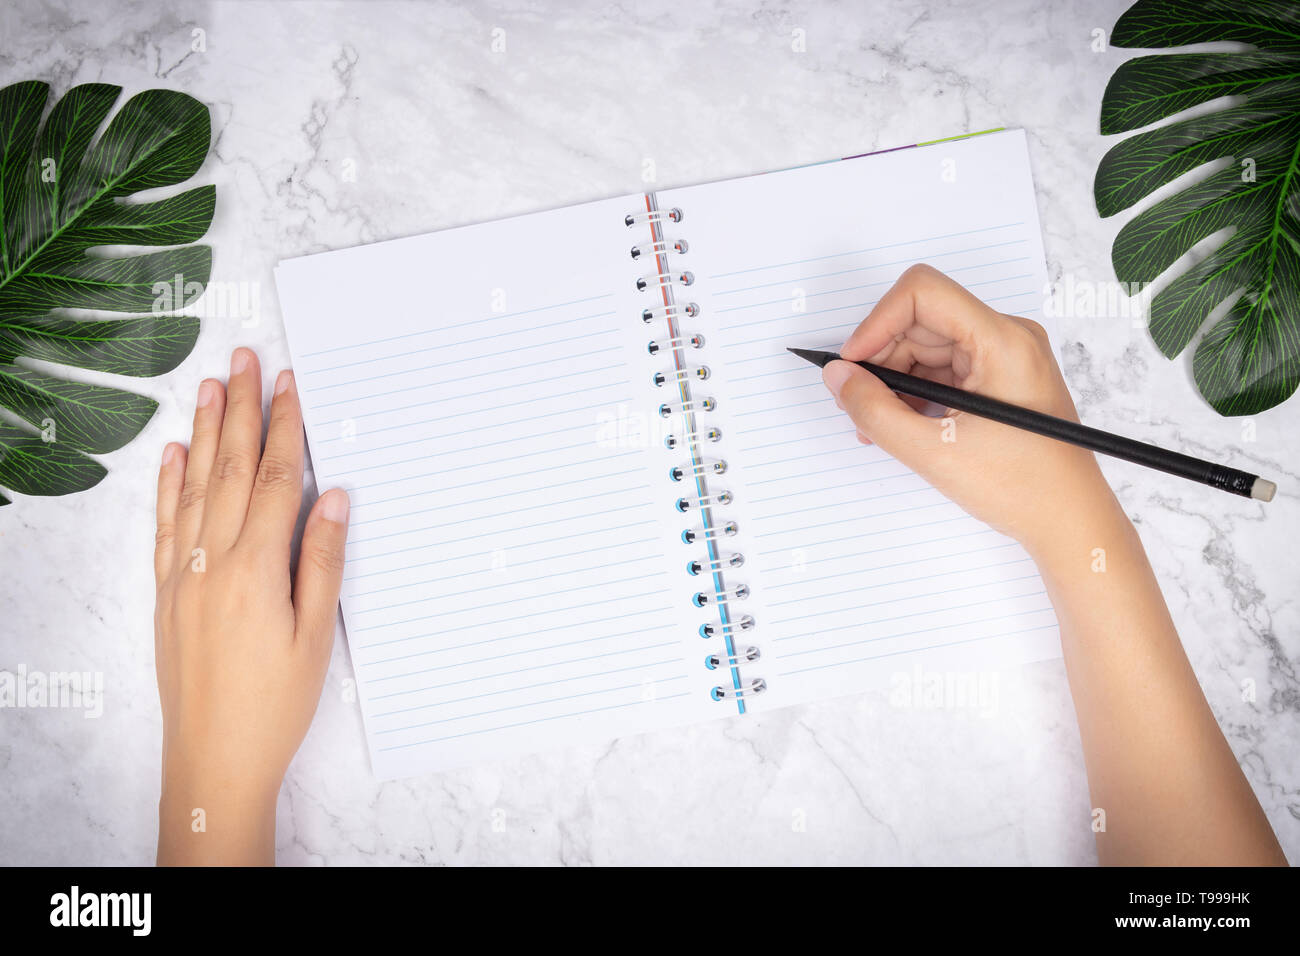 Flach der Frau Hand schreiben in eine leere weiße Seite notebook auf weißem Marmor Schreibtisch, Ansicht von oben. Green Palm Leaf auf dem Schreibtisch für die Dekoration Stockfoto